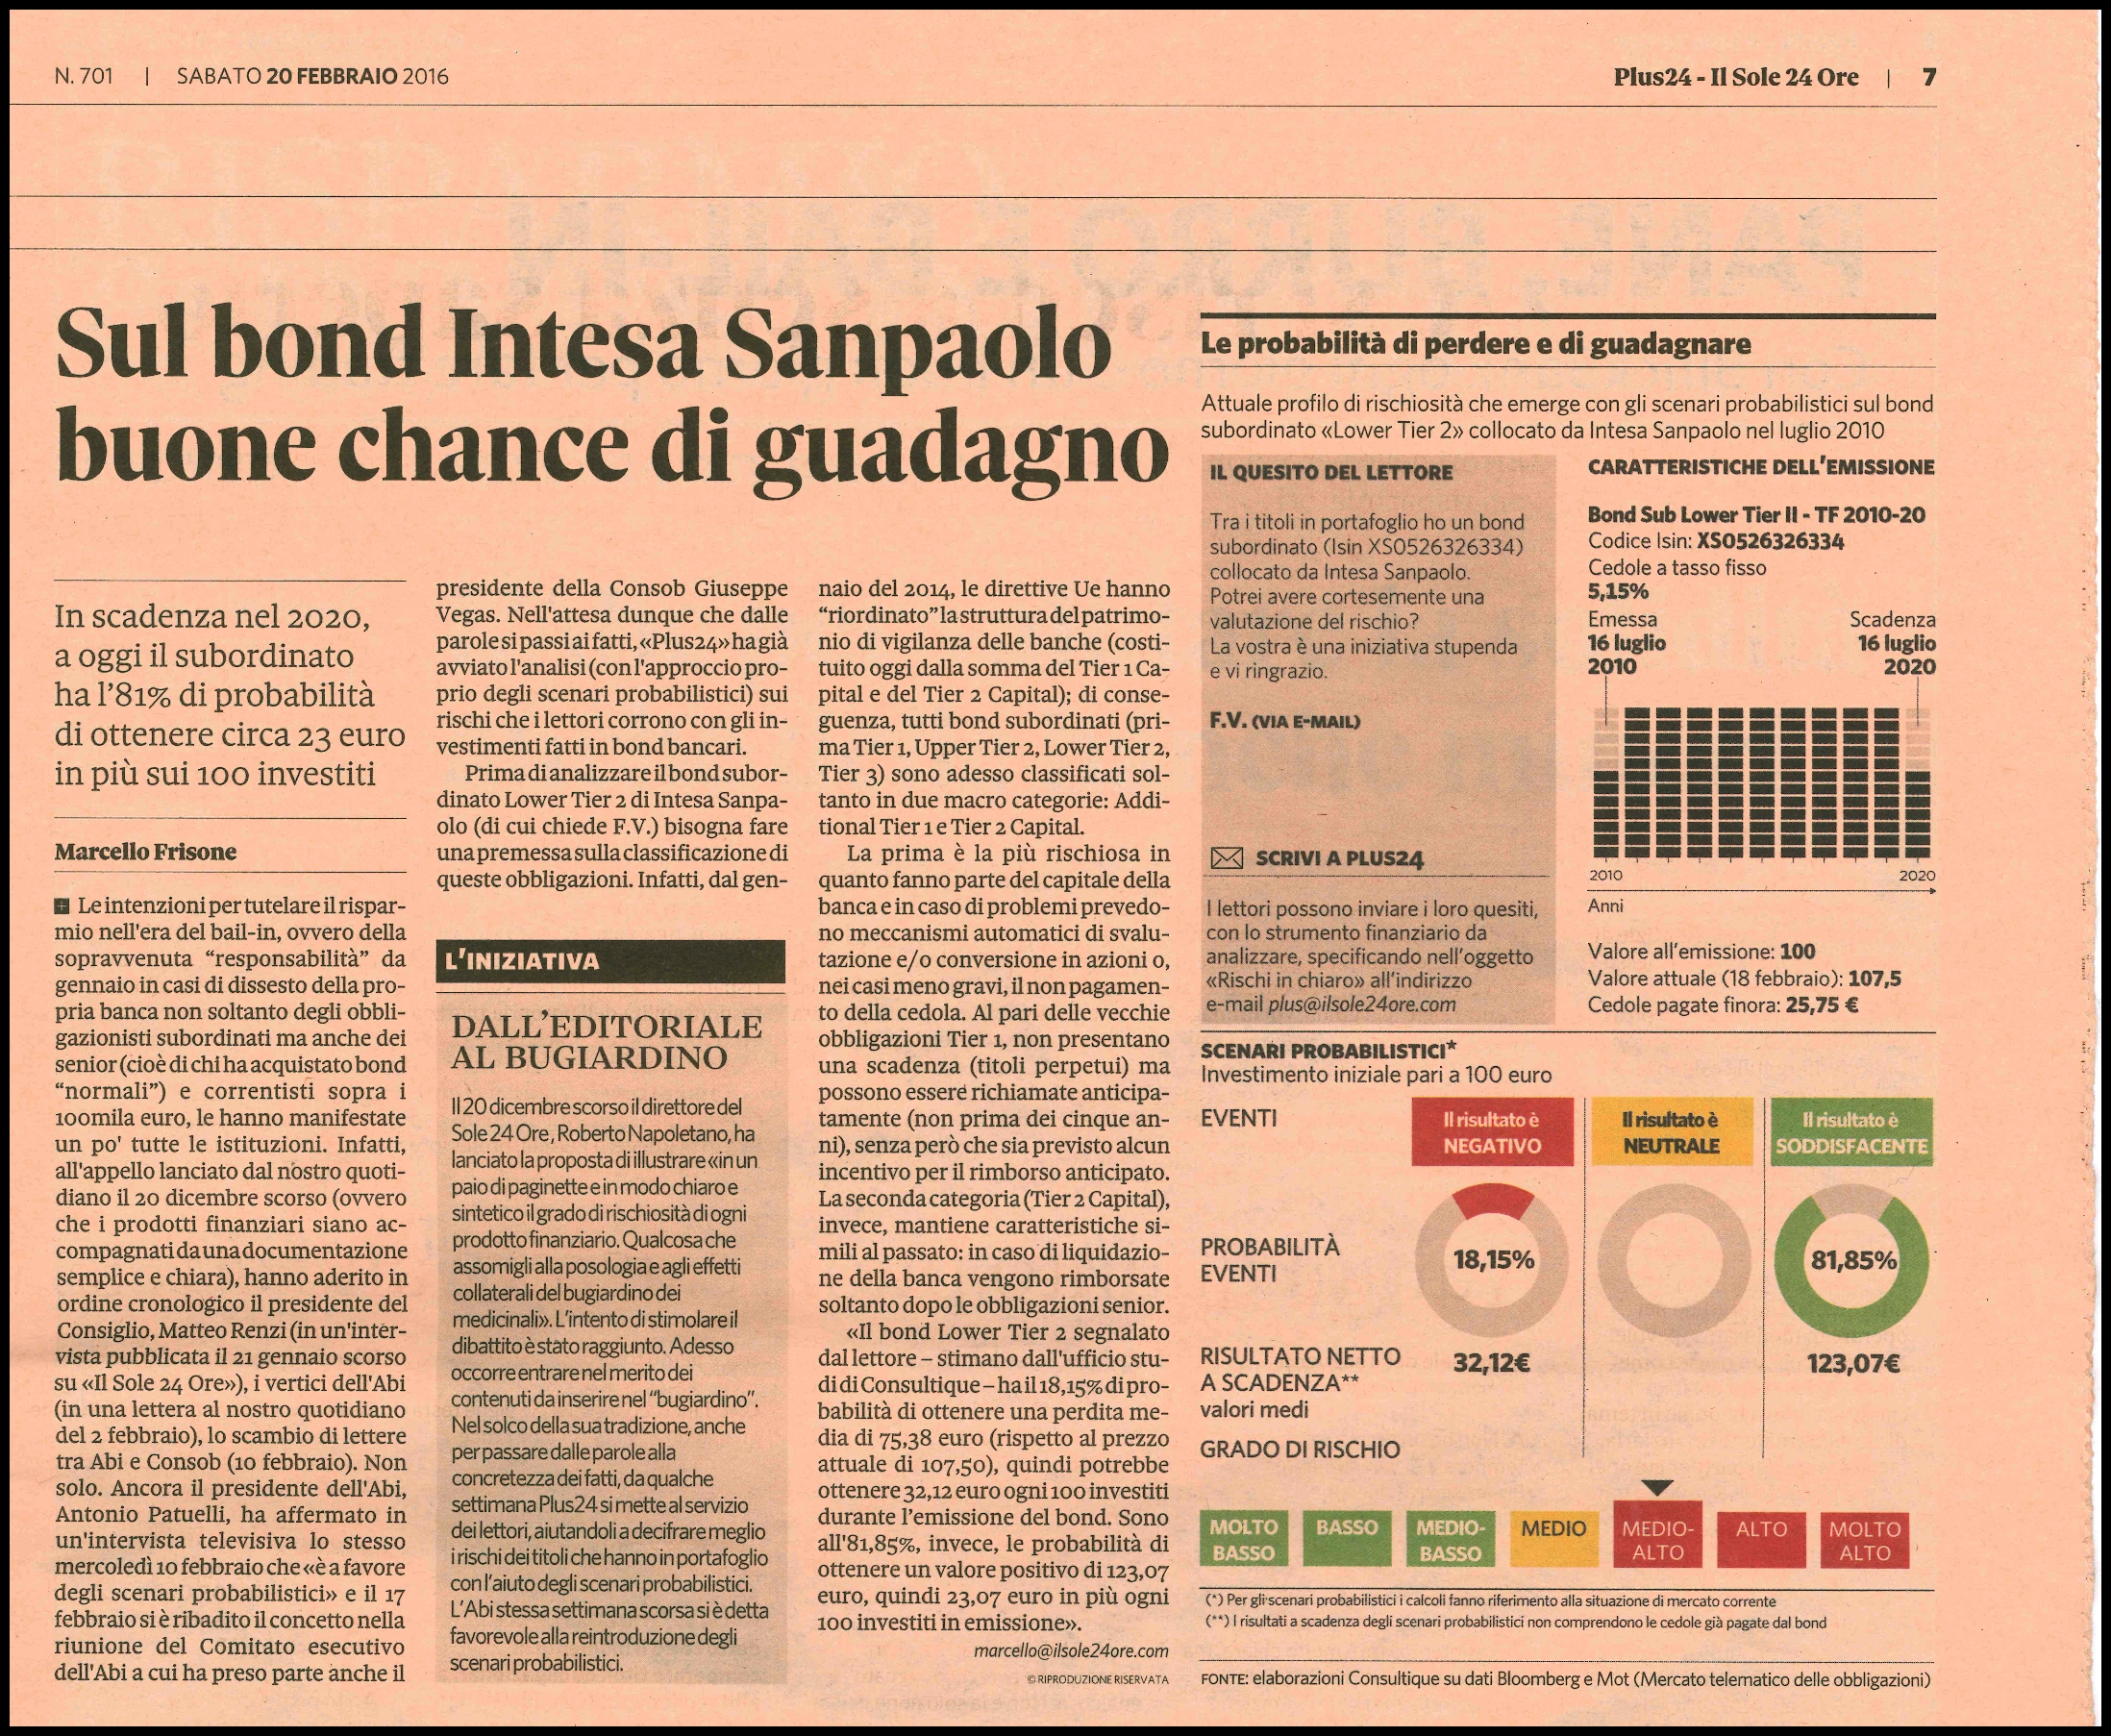 Sul bond Intesa Sanpaolo buone chance di guadagno